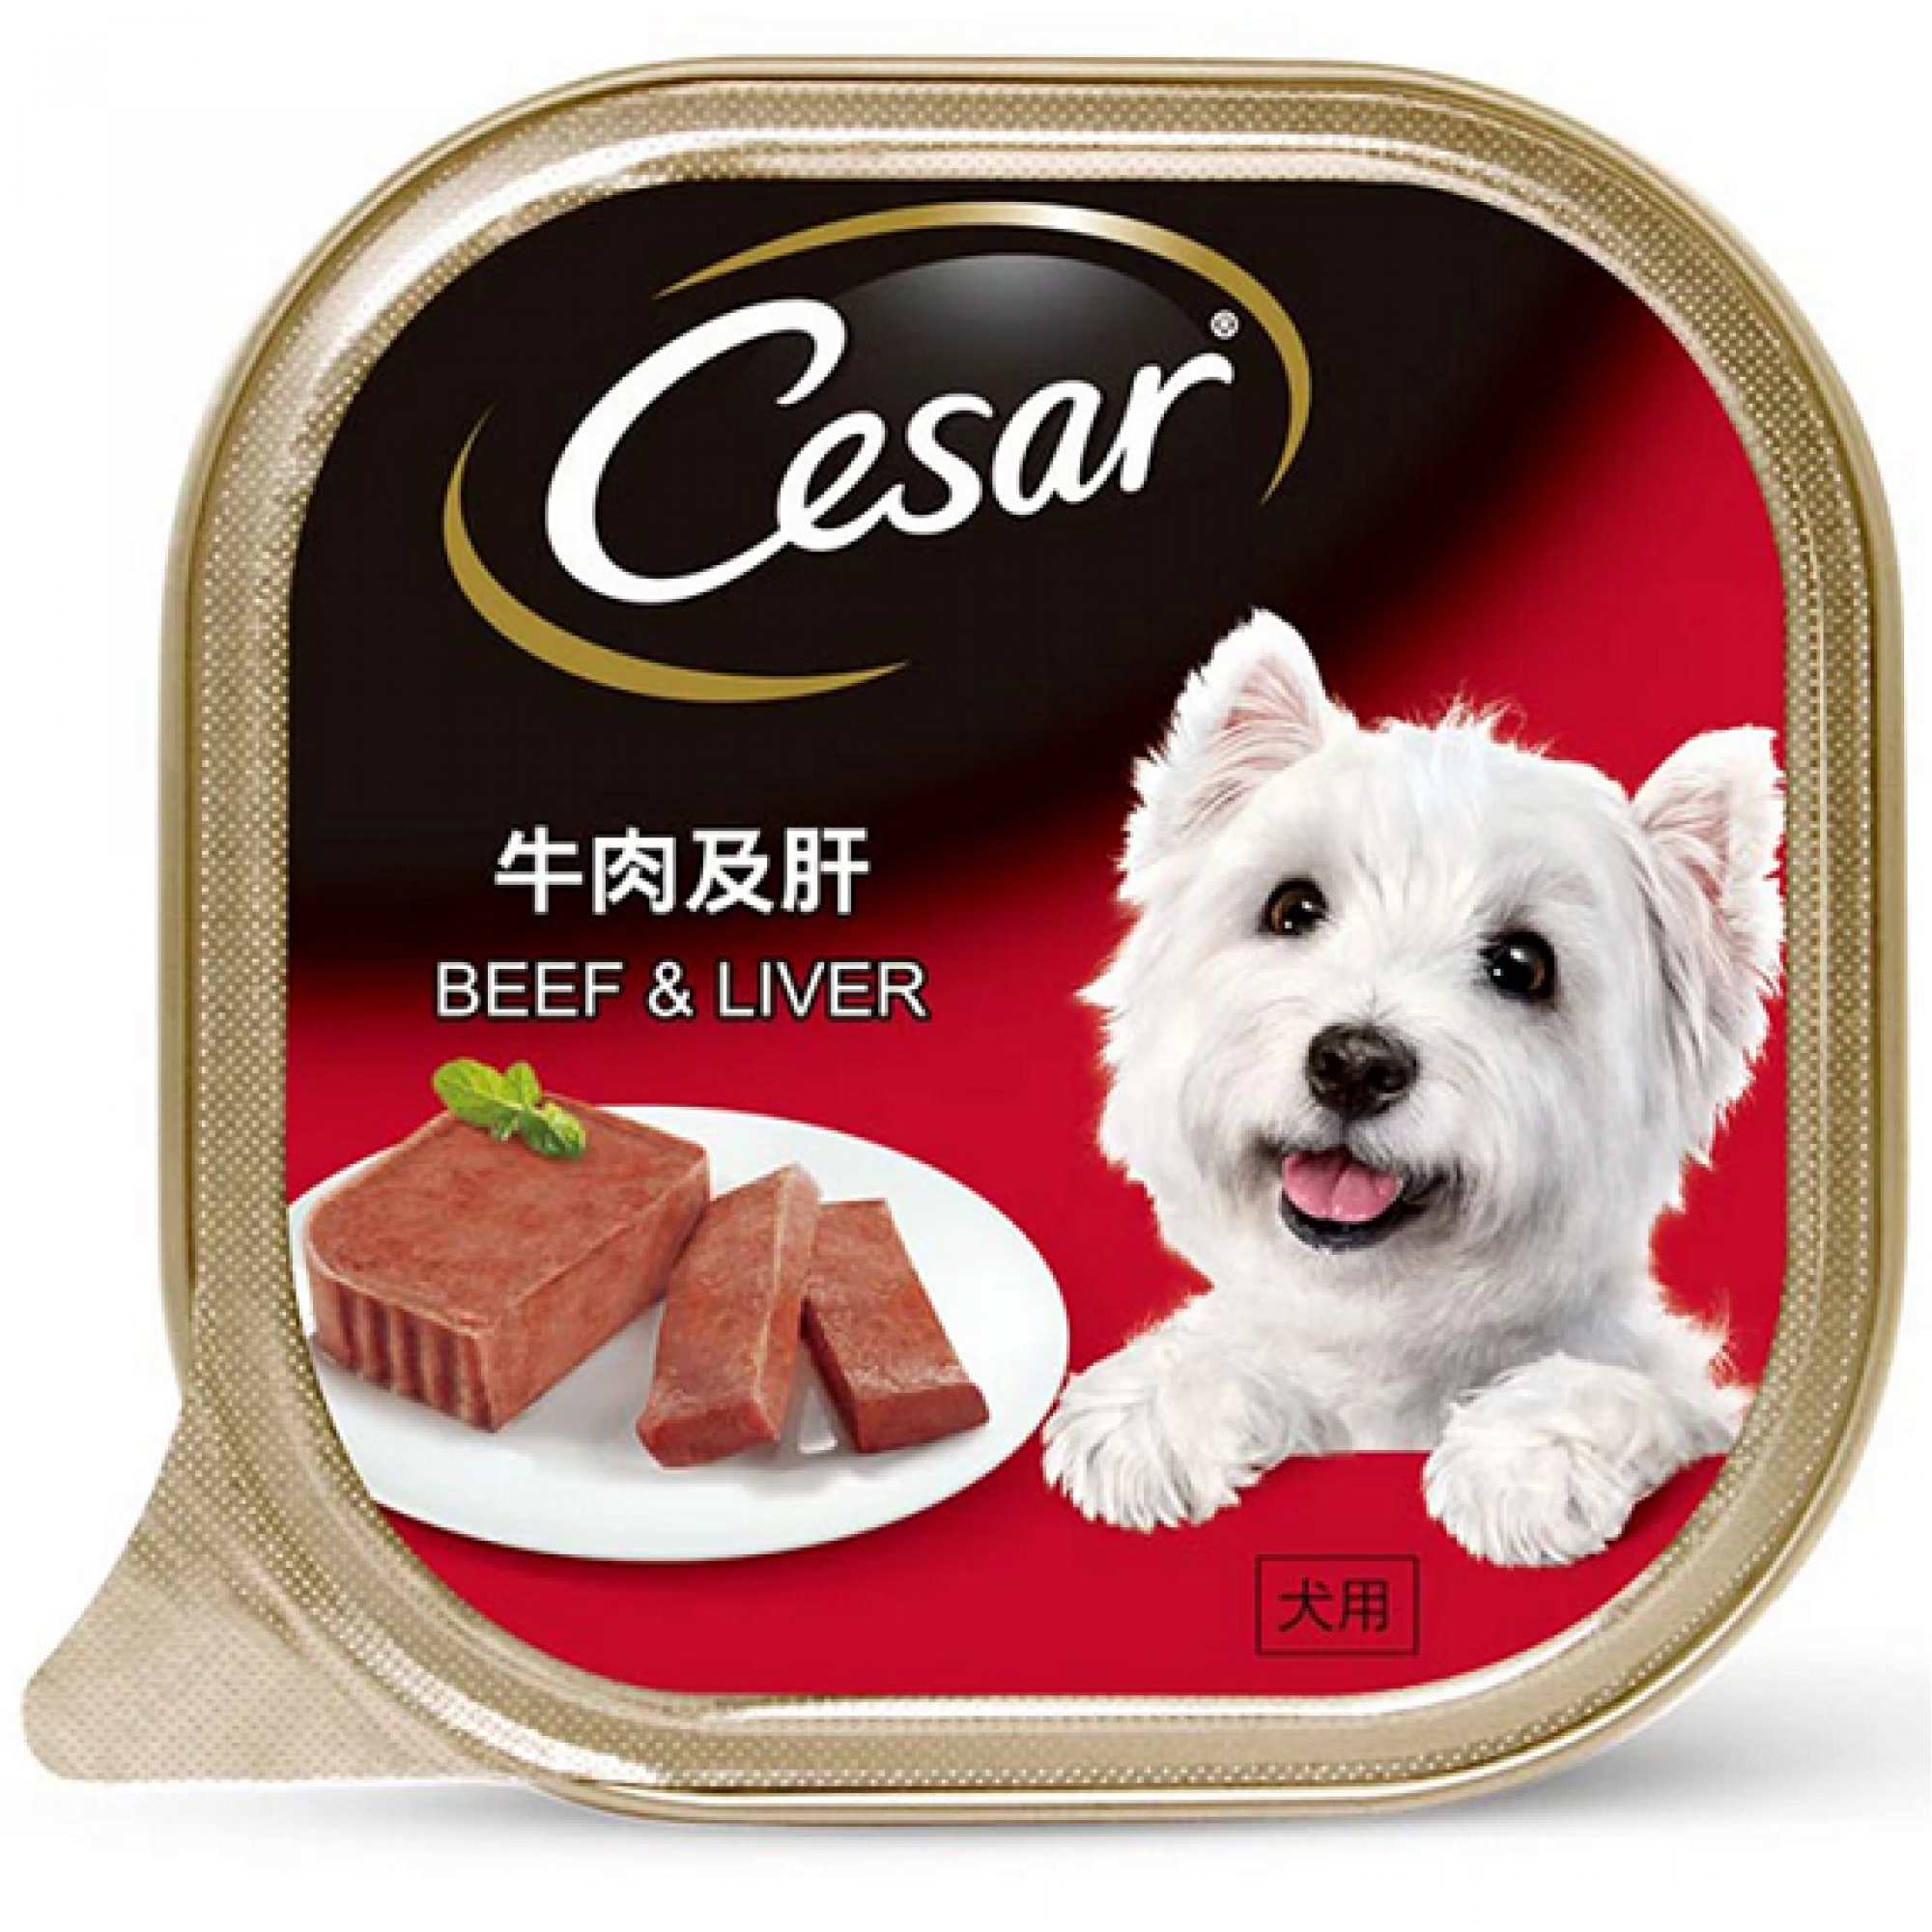 Cesar - Beef & Liver Pate Dog Food 100g